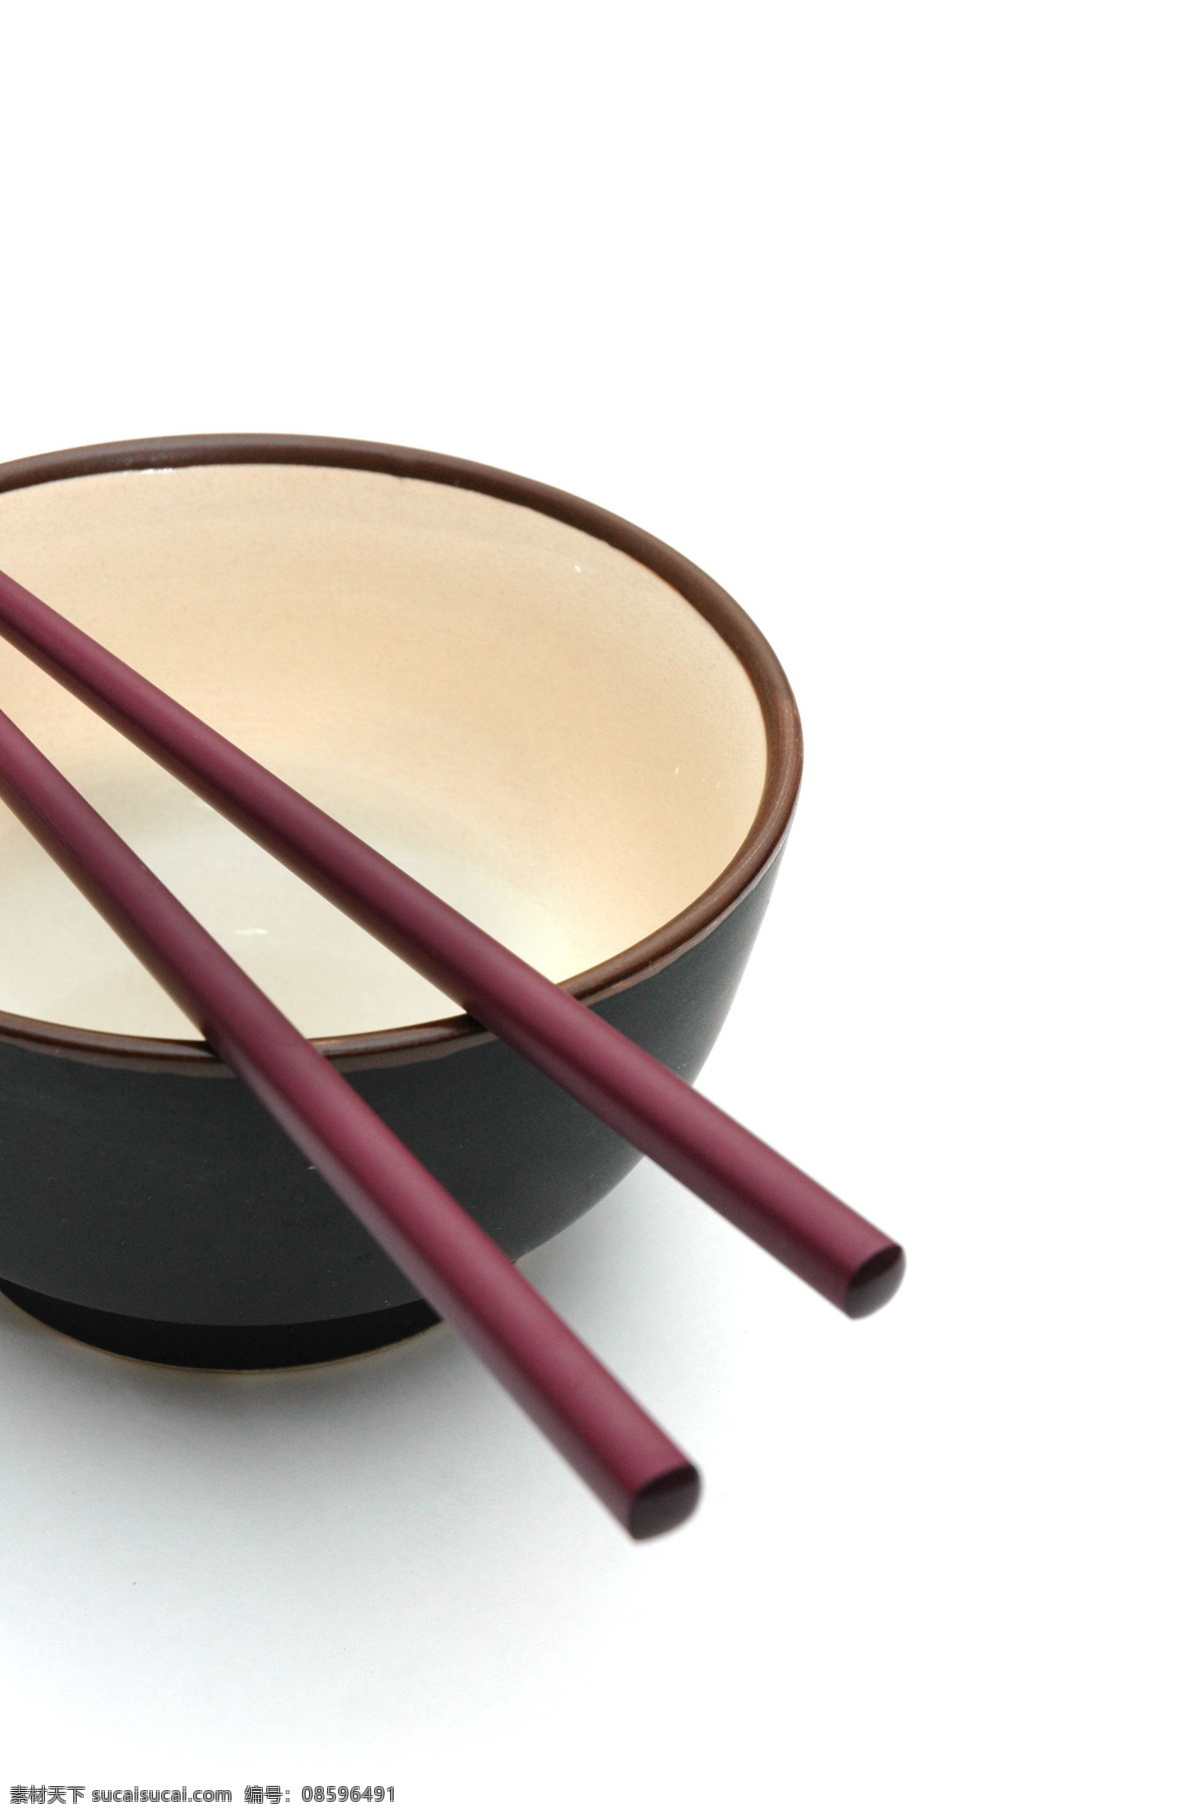 筷子与碗 餐具 筷子 碗 餐饮美食 餐具厨具 常用餐具 摄影图